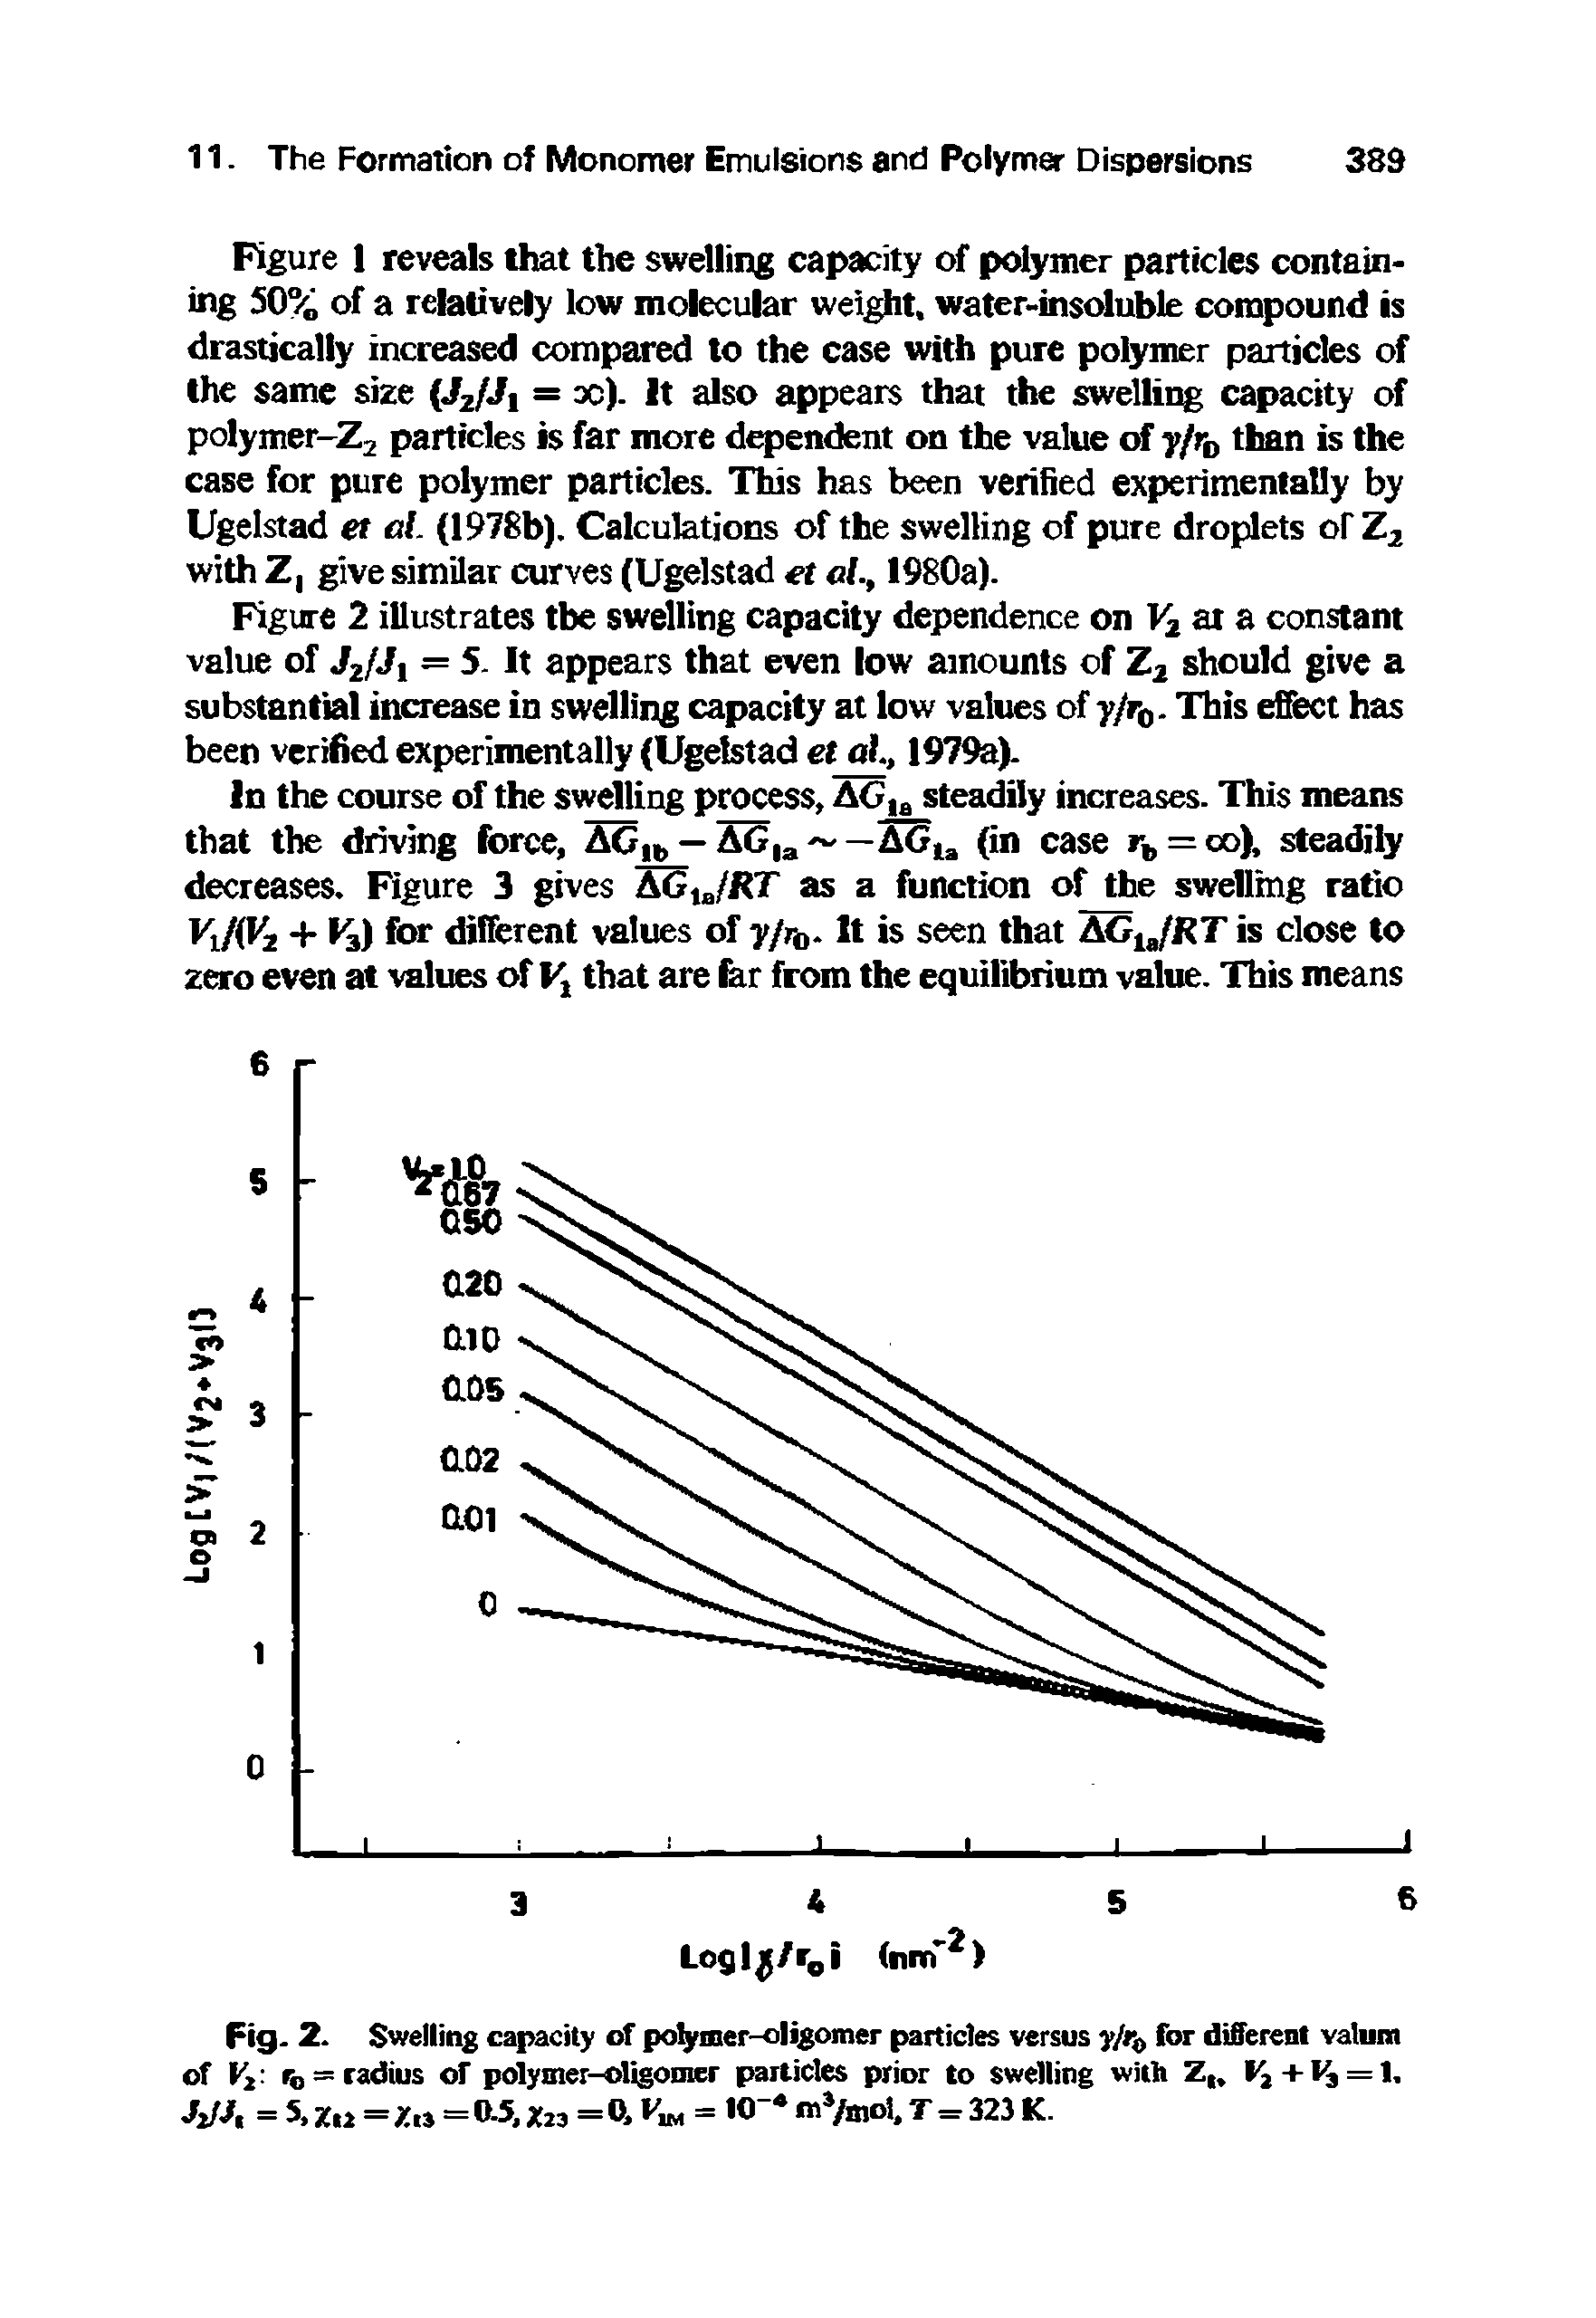 Fig. 2. Swelling capacity of po mer-oligomer particles versus for different vatum of Vi. To = radius of polymer-oligomer particles prior to swelling with Z,. =...